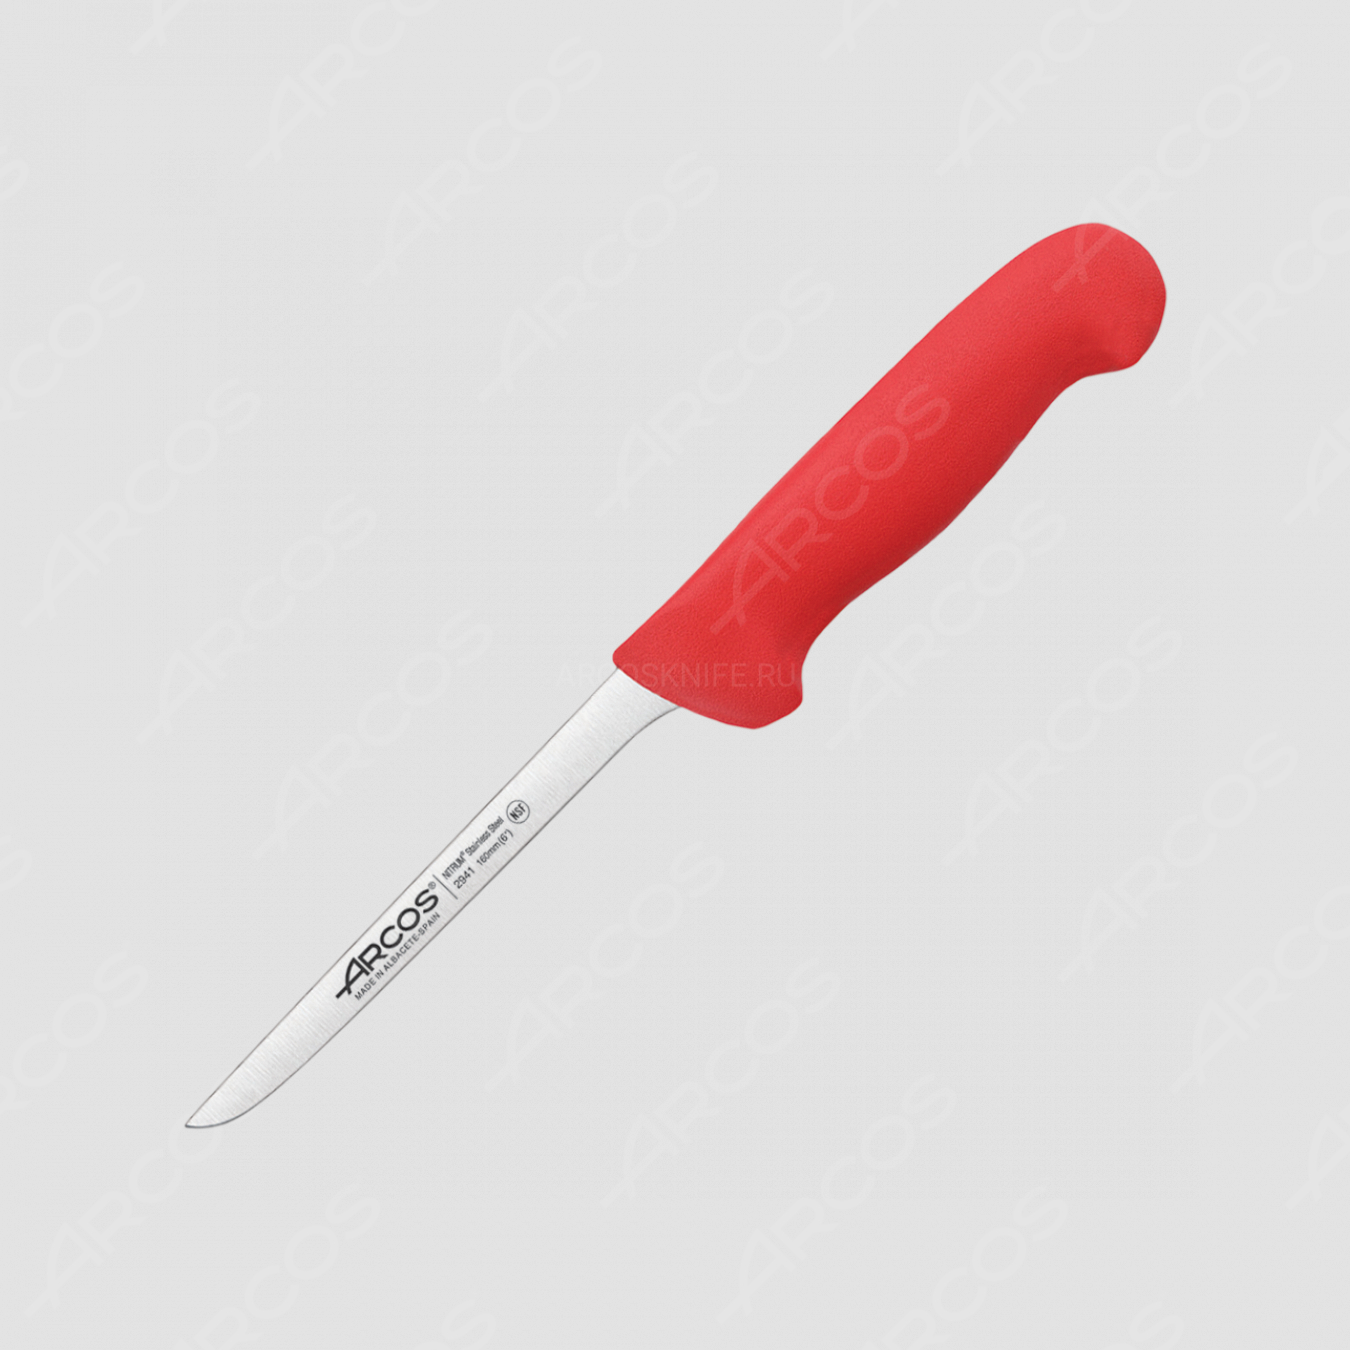 Нож кухонный обвалочный 16 см, рукоять красная, серия 2900, ARCOS, Испания